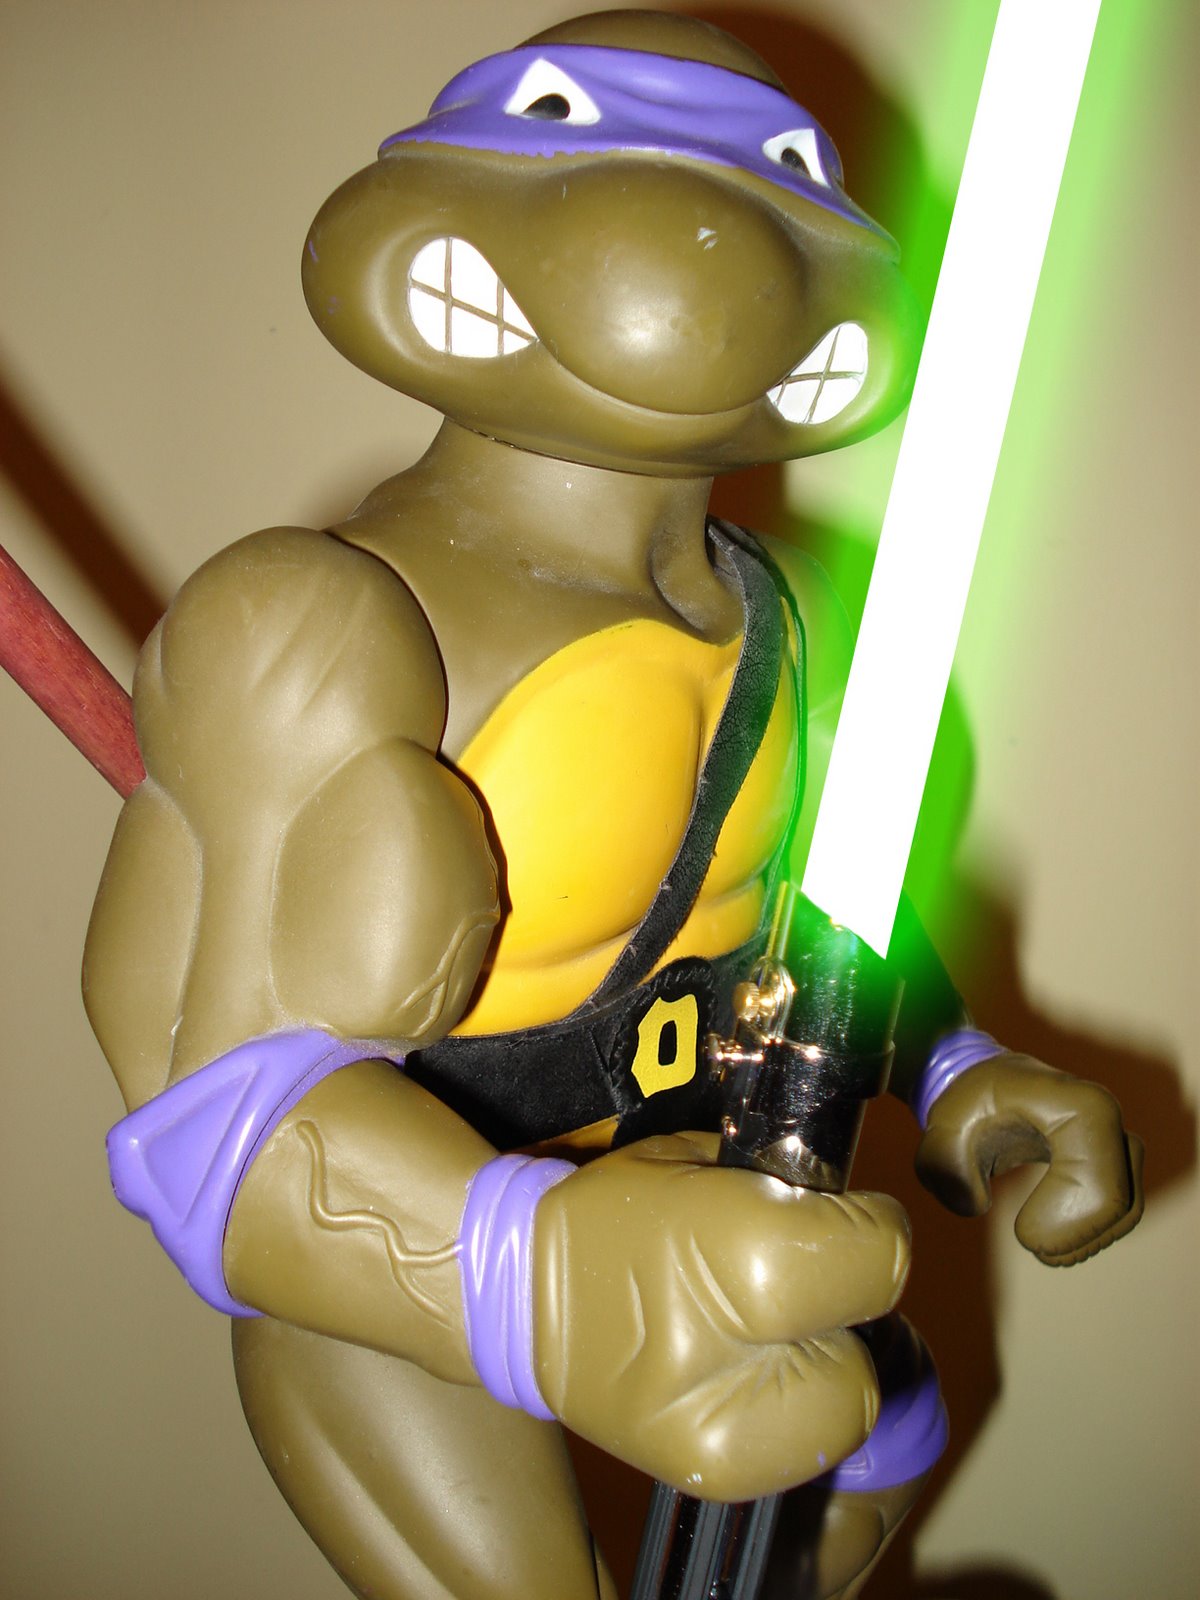 [Donatello+with+lightsaber+1.jpg]